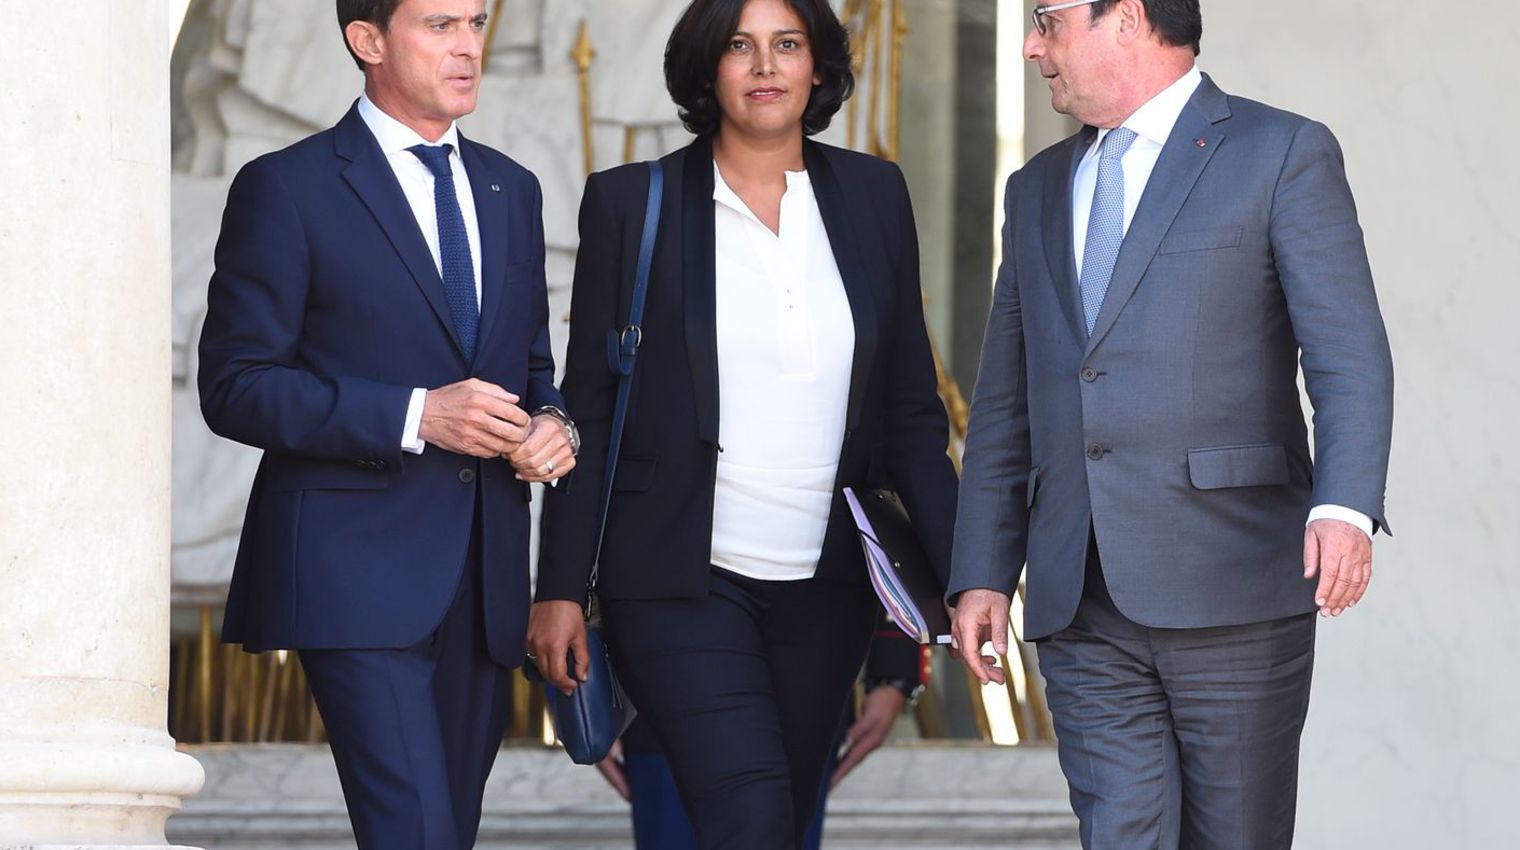 le president francois hollande d le premier ministre manuel valls et la nouvelle ministre du travail myriam el khomri apres sa nomination le 2 septembre 2015 a l elysee 5407563